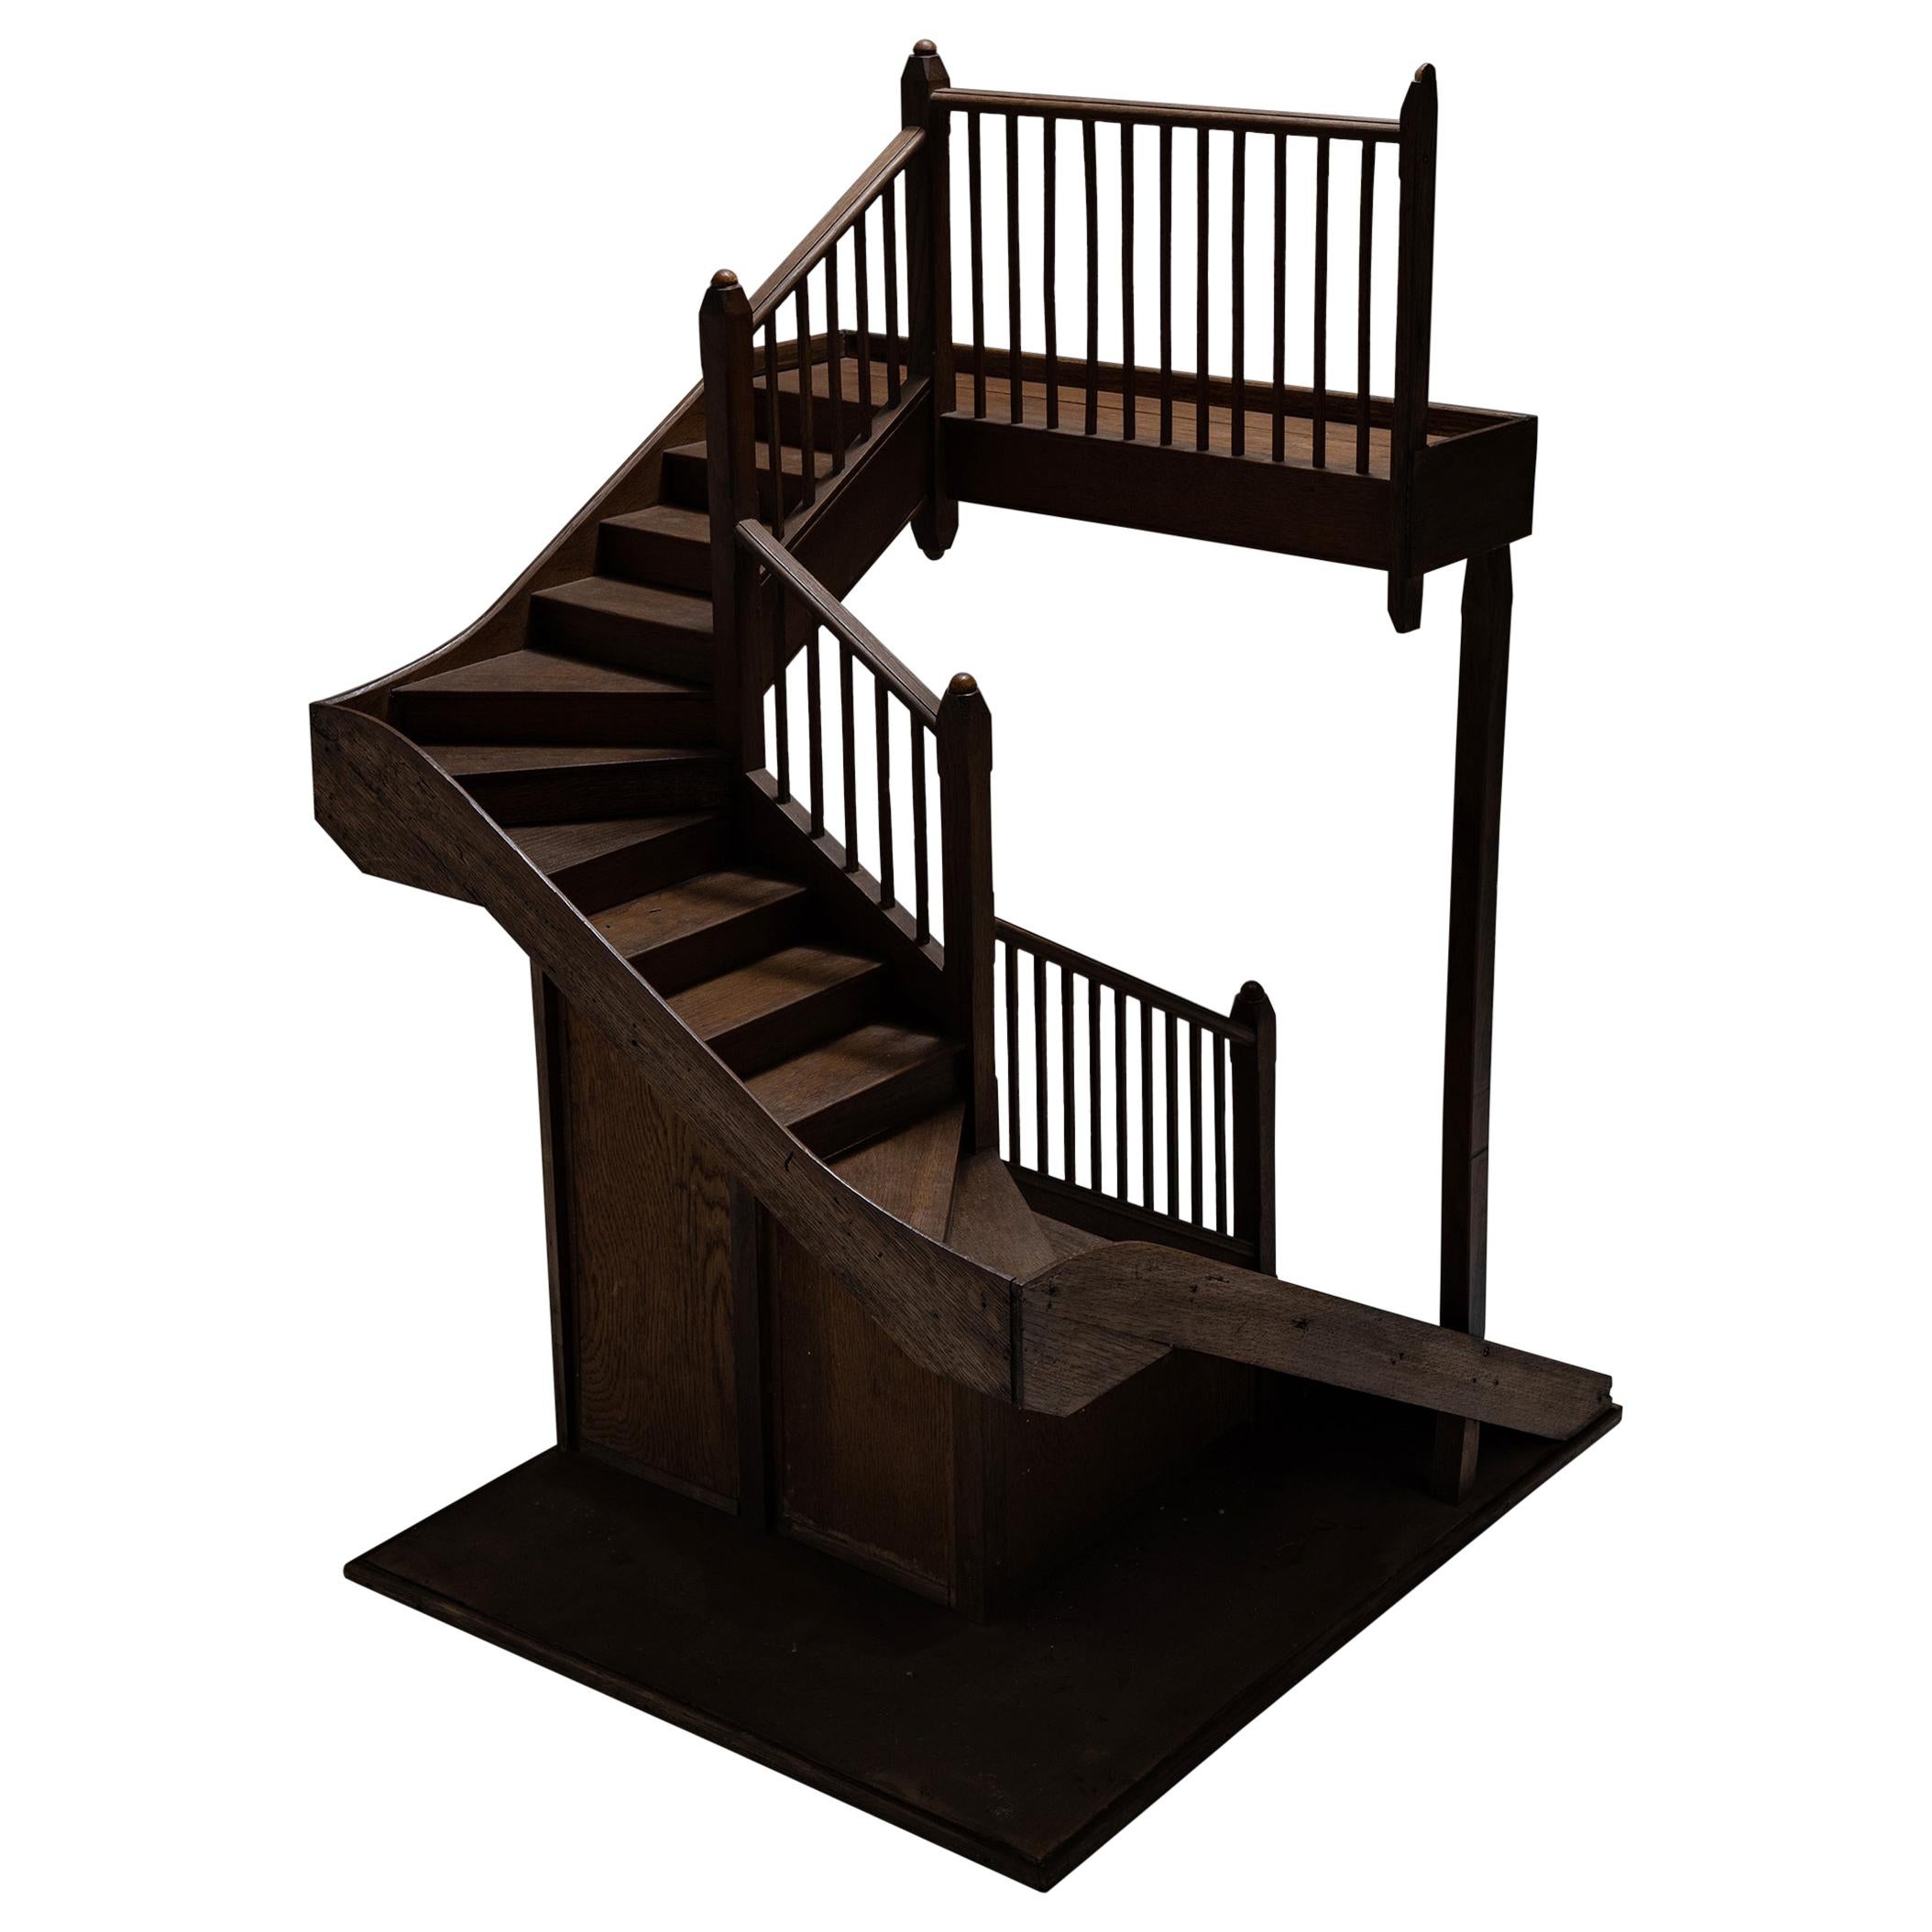 Architectural Staircase Model, England, Circa 1900